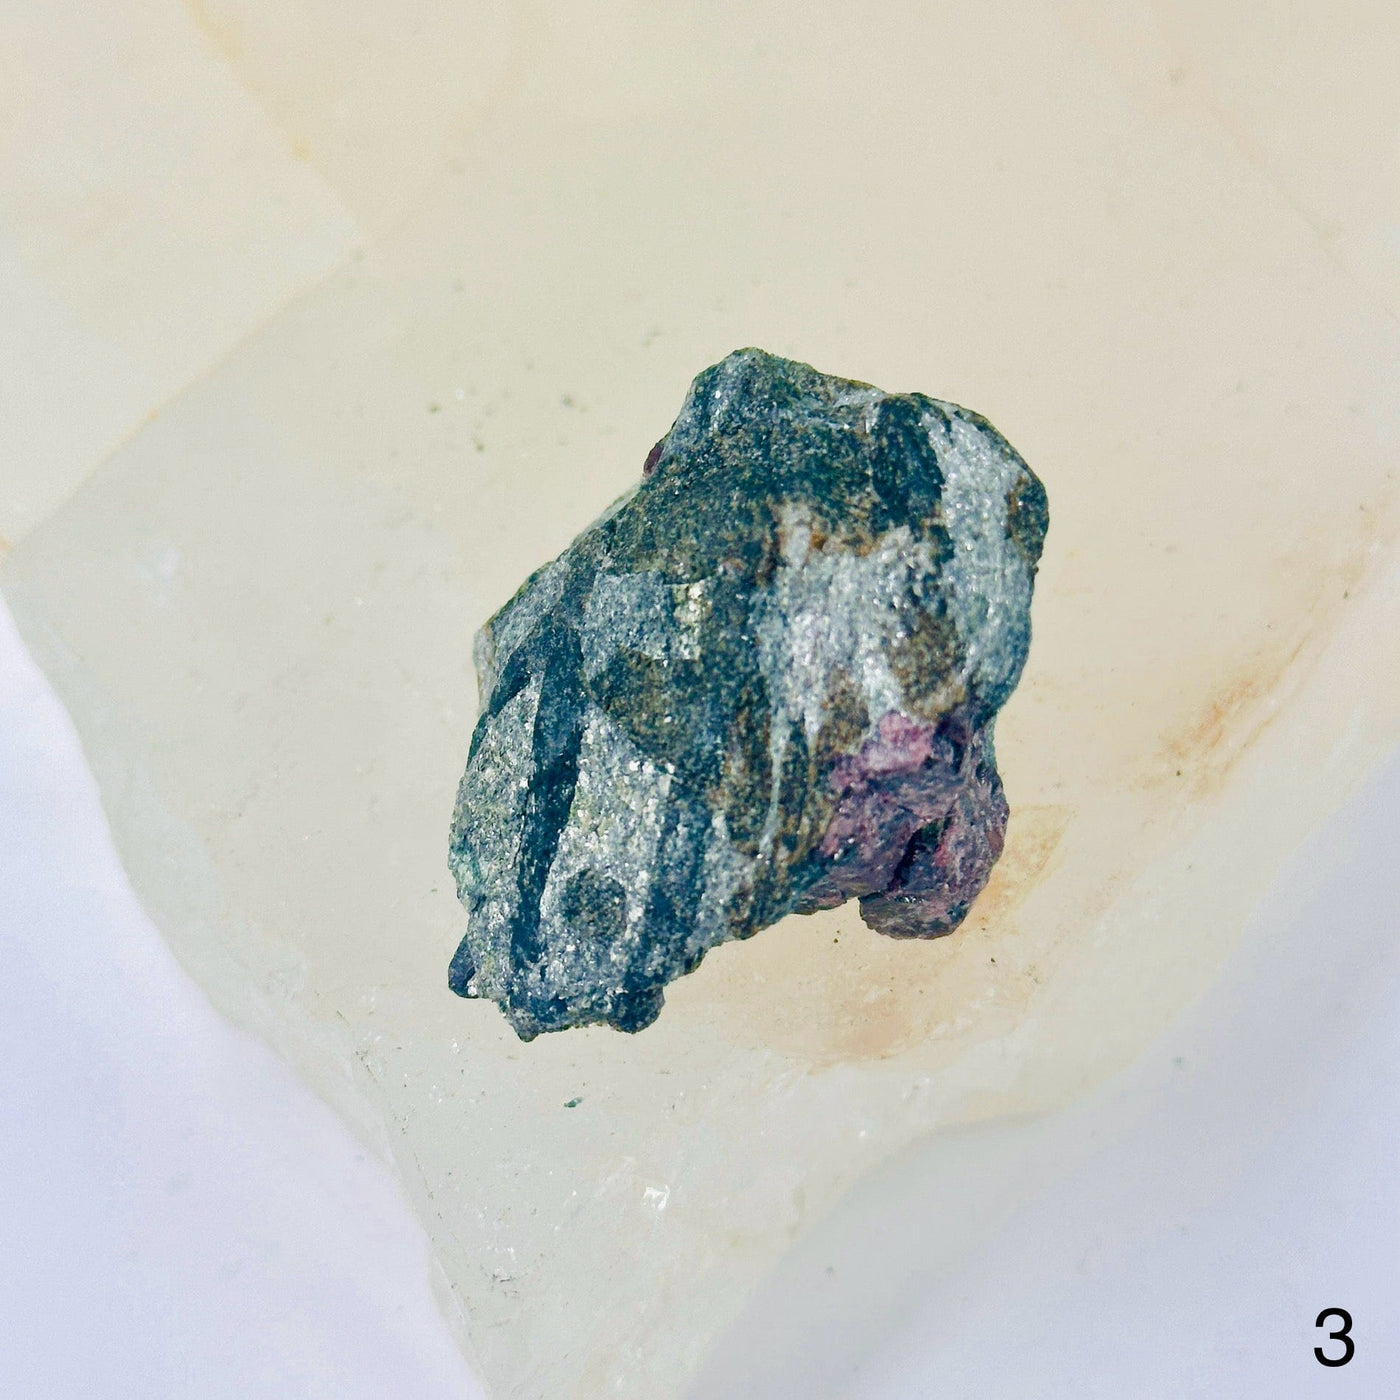  Garnet on Hematite Matrix - Natural Crystal - You Choose variant 3 labeled